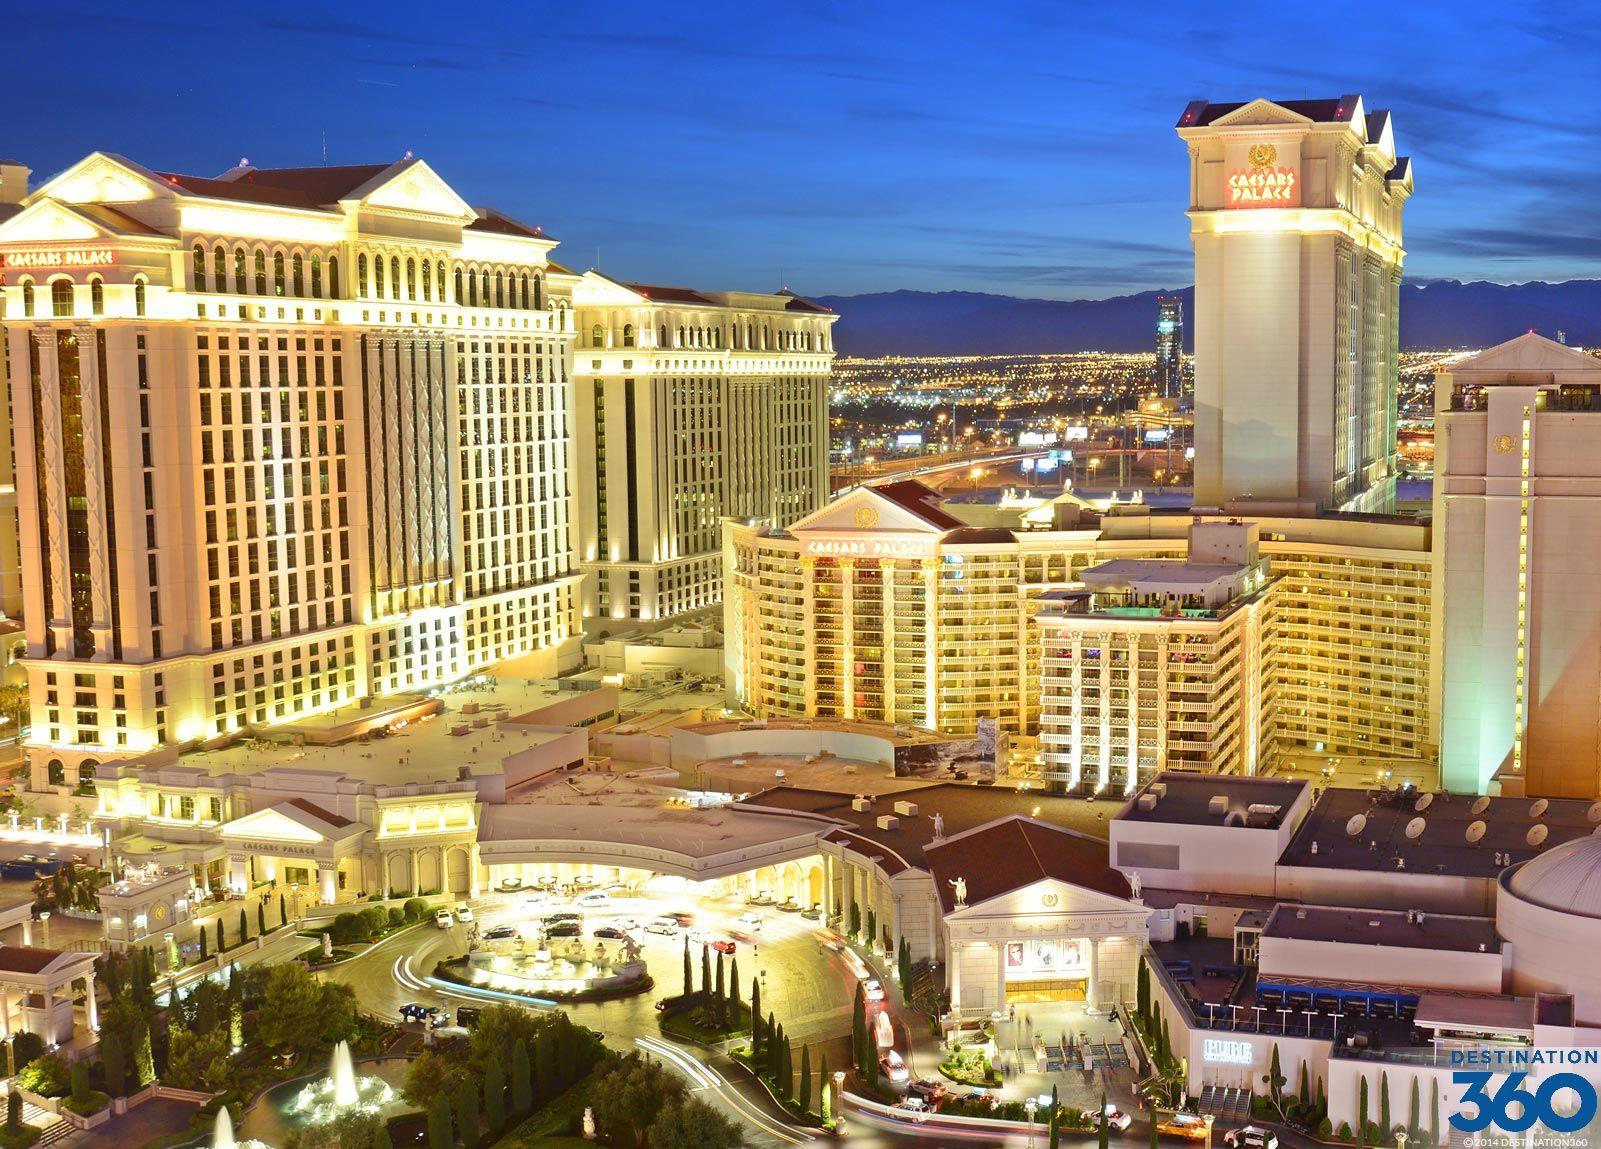 Vegas Caesars Palace Logo - Caesars Palace Las Vegas virtual tours of Caesars Palace Hotel